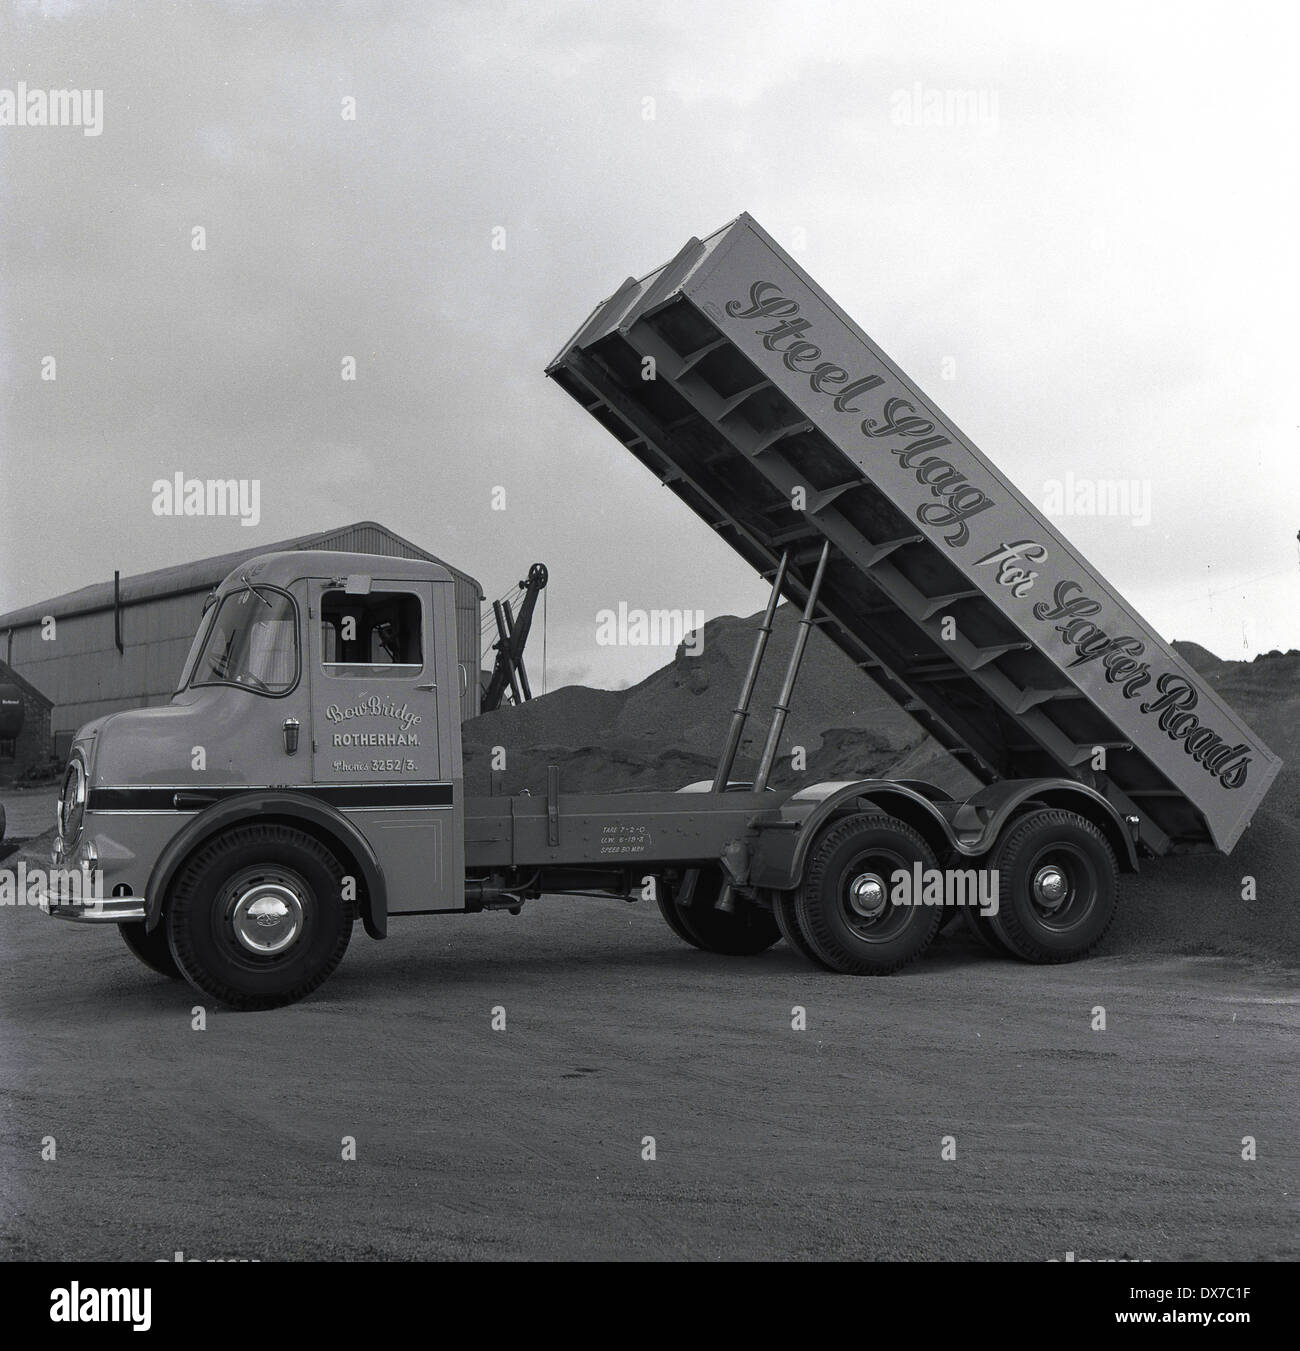 ERF (camion) azienda Photo-historique-annees-1950-d-un-camion-de-laitier-d-acier-a-sa-charge-de-basculement-dans-une-usine-ou-chantier-sheffield-angleterre-dx7c1f